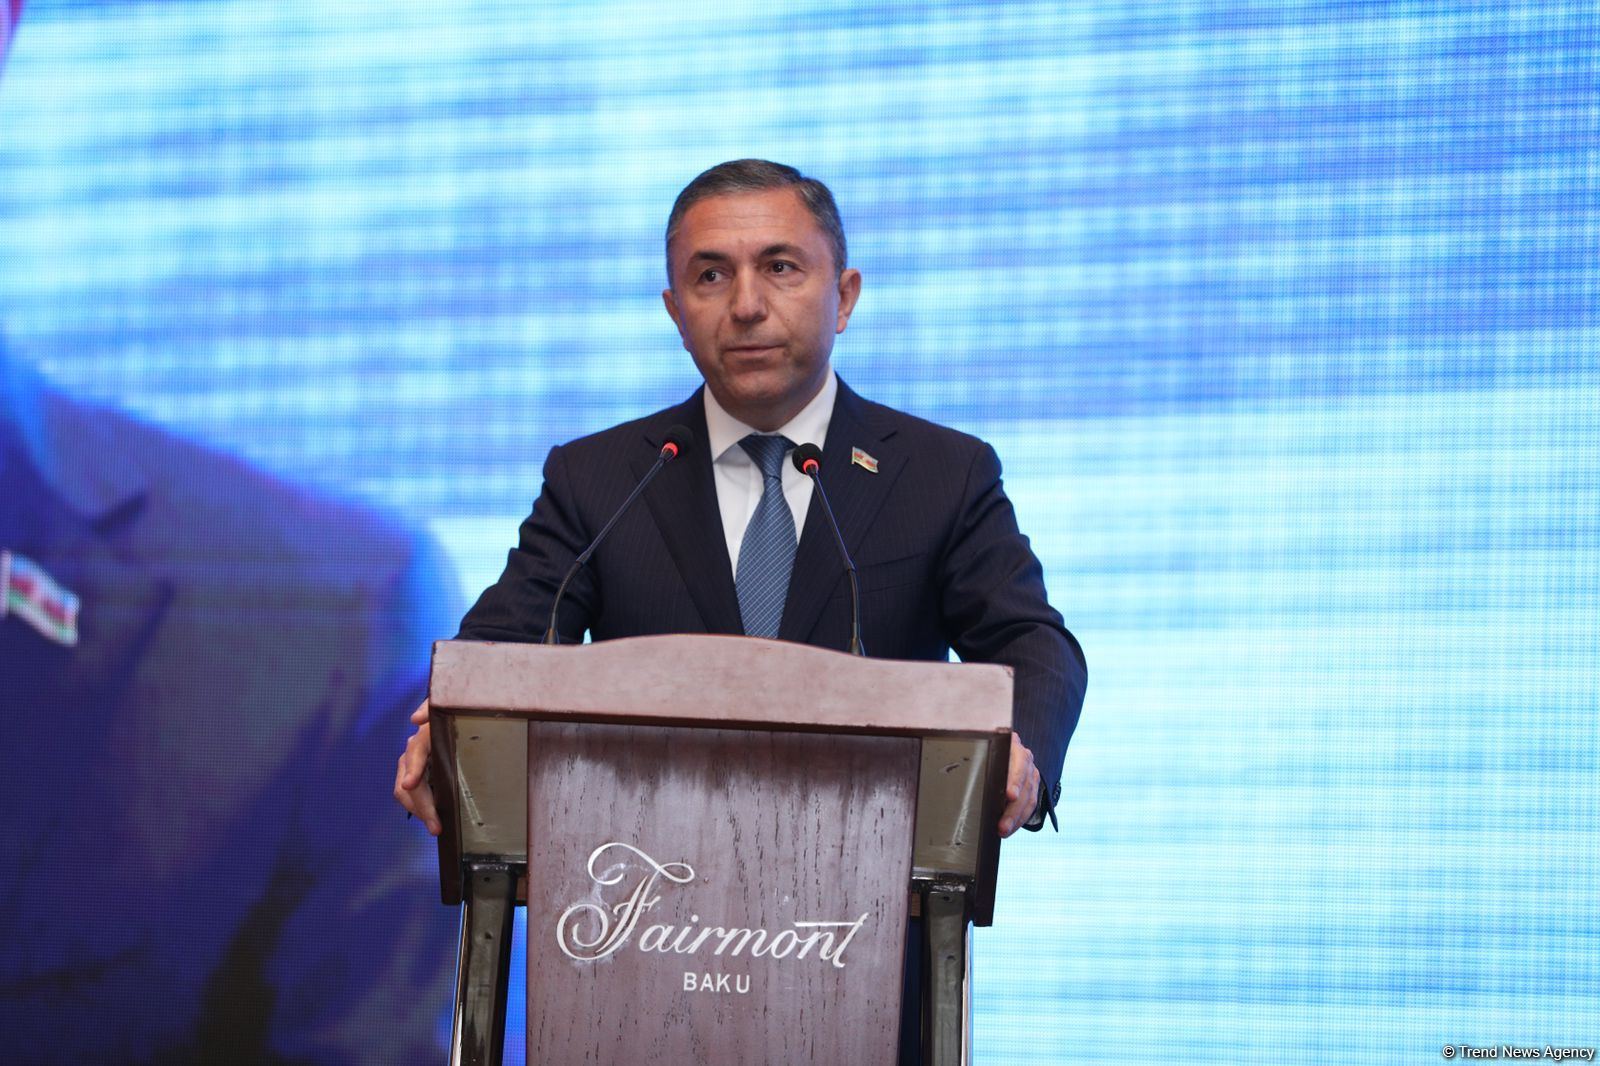 Over one million businessmen registered in Azerbaijan so far - MP